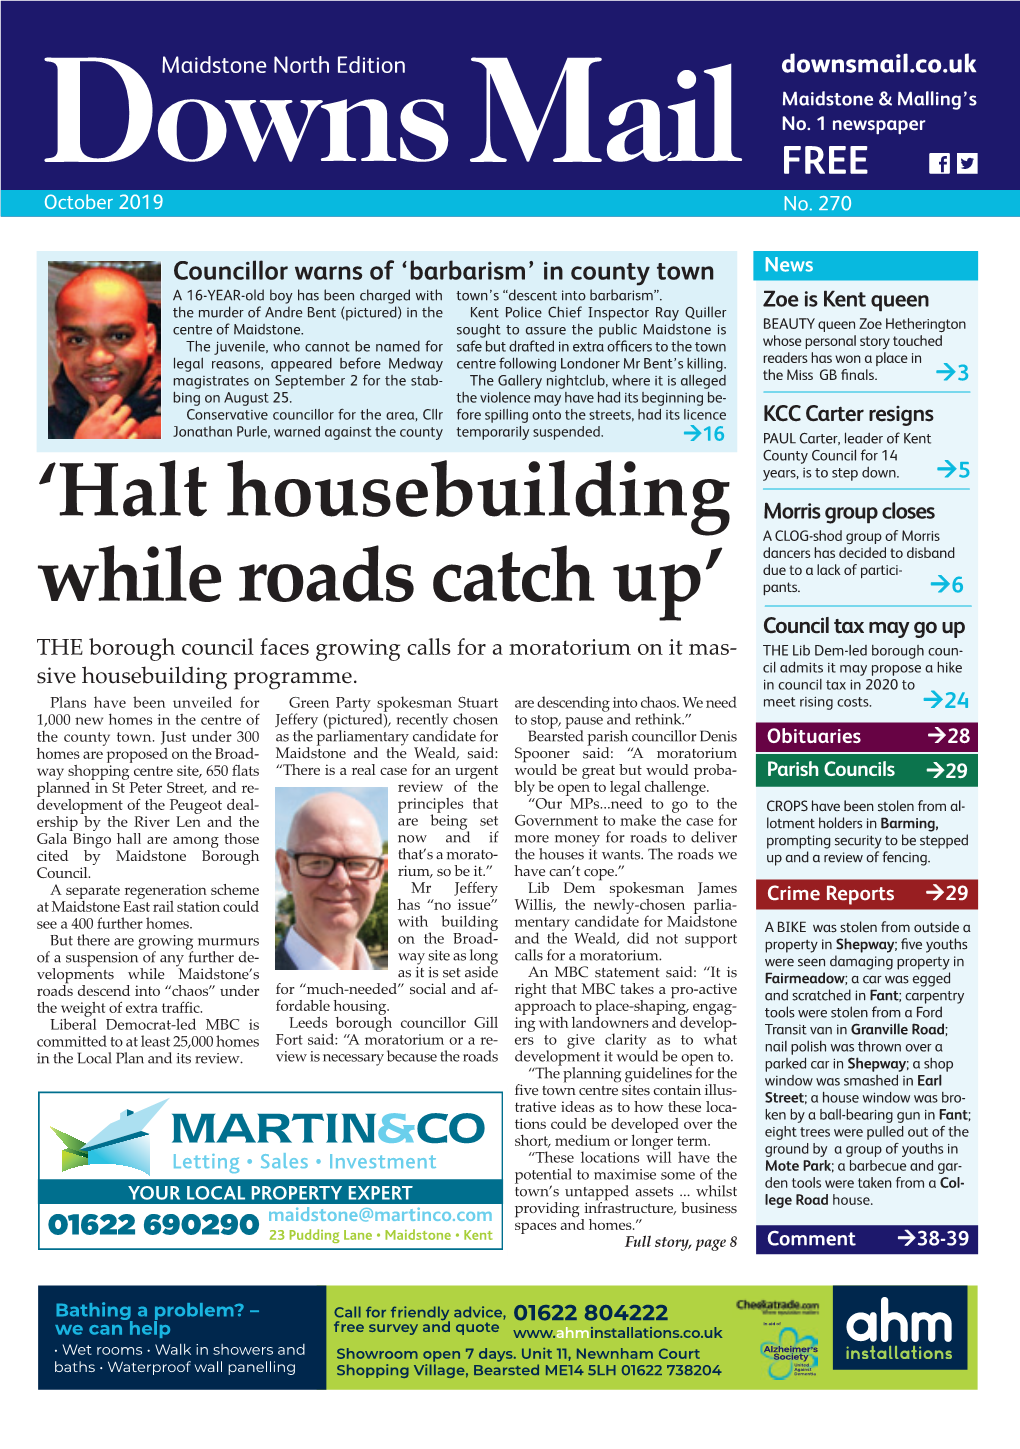 'Halt Housebuilding While Roads Catch